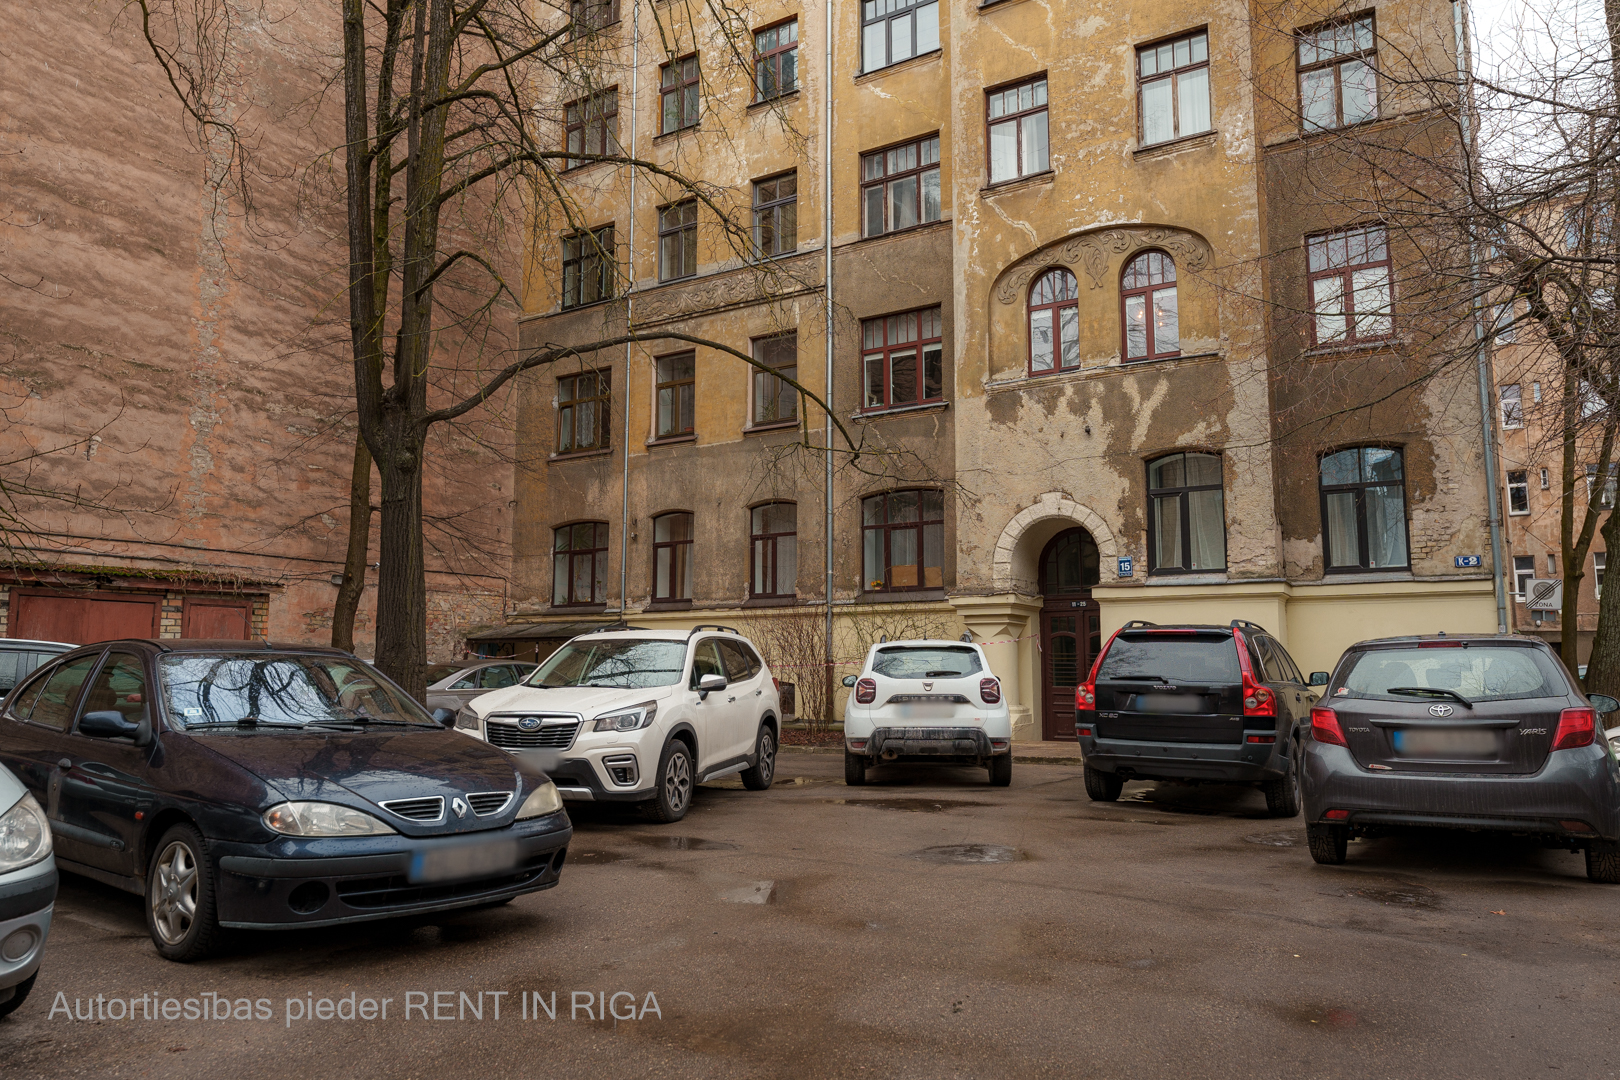 Apartment for rent, Strēlnieku street 15 - Image 1